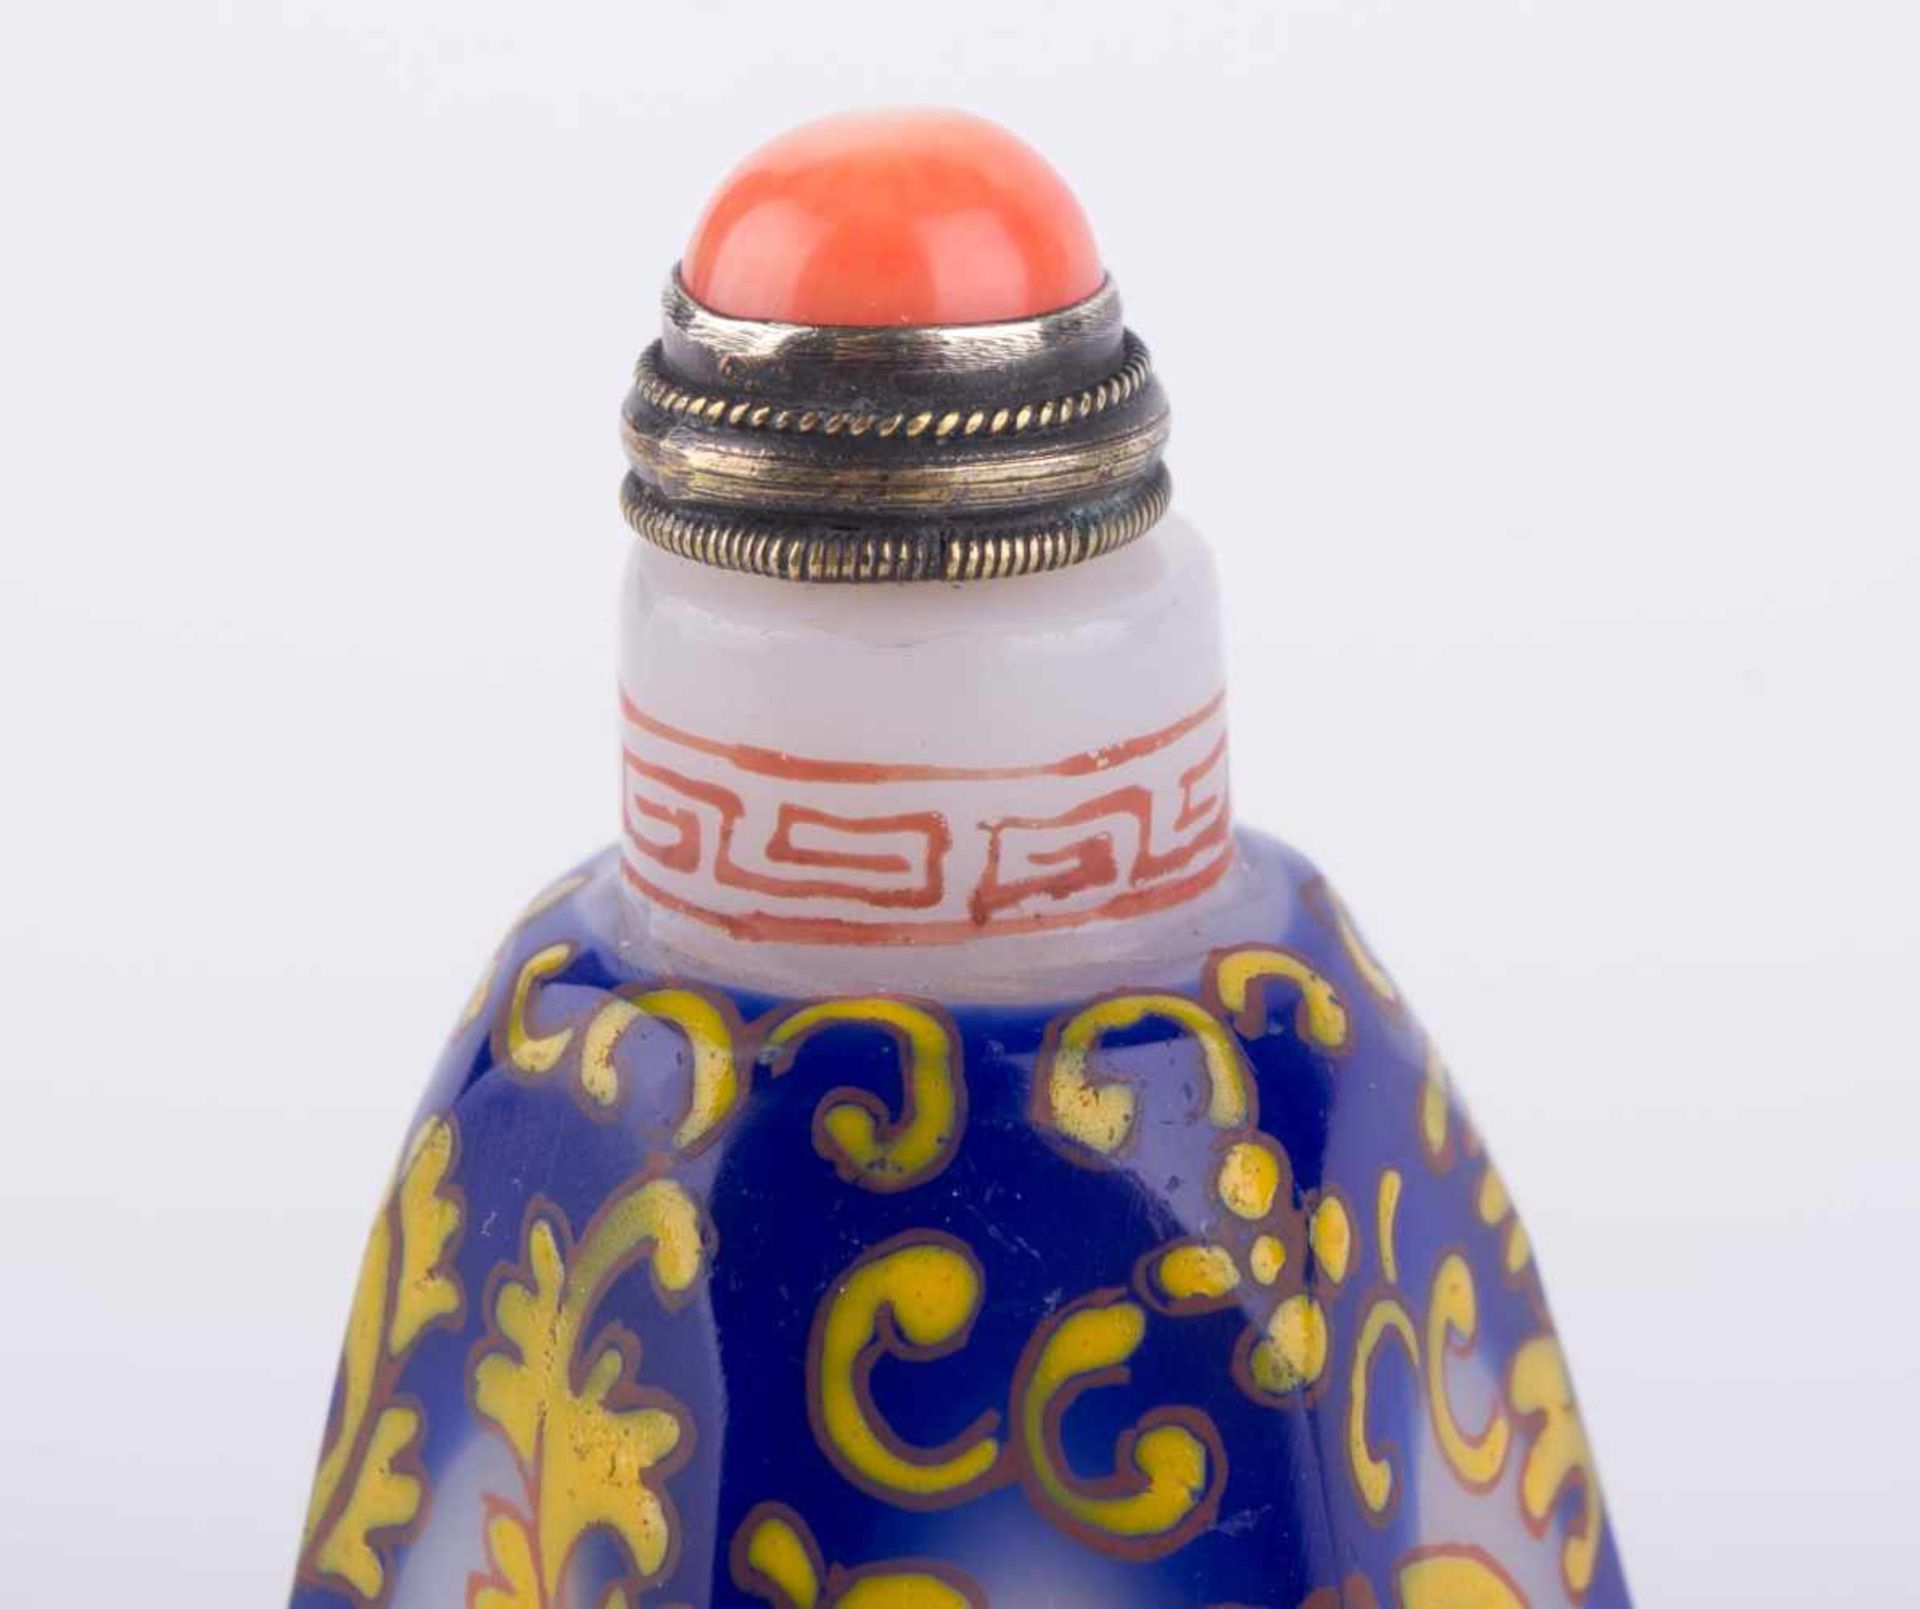 Snuffbottle China um 1900 Milchglas, farbig staffiert, Verschluß mit Koralle, H: ca. 70 mm, - Bild 3 aus 4